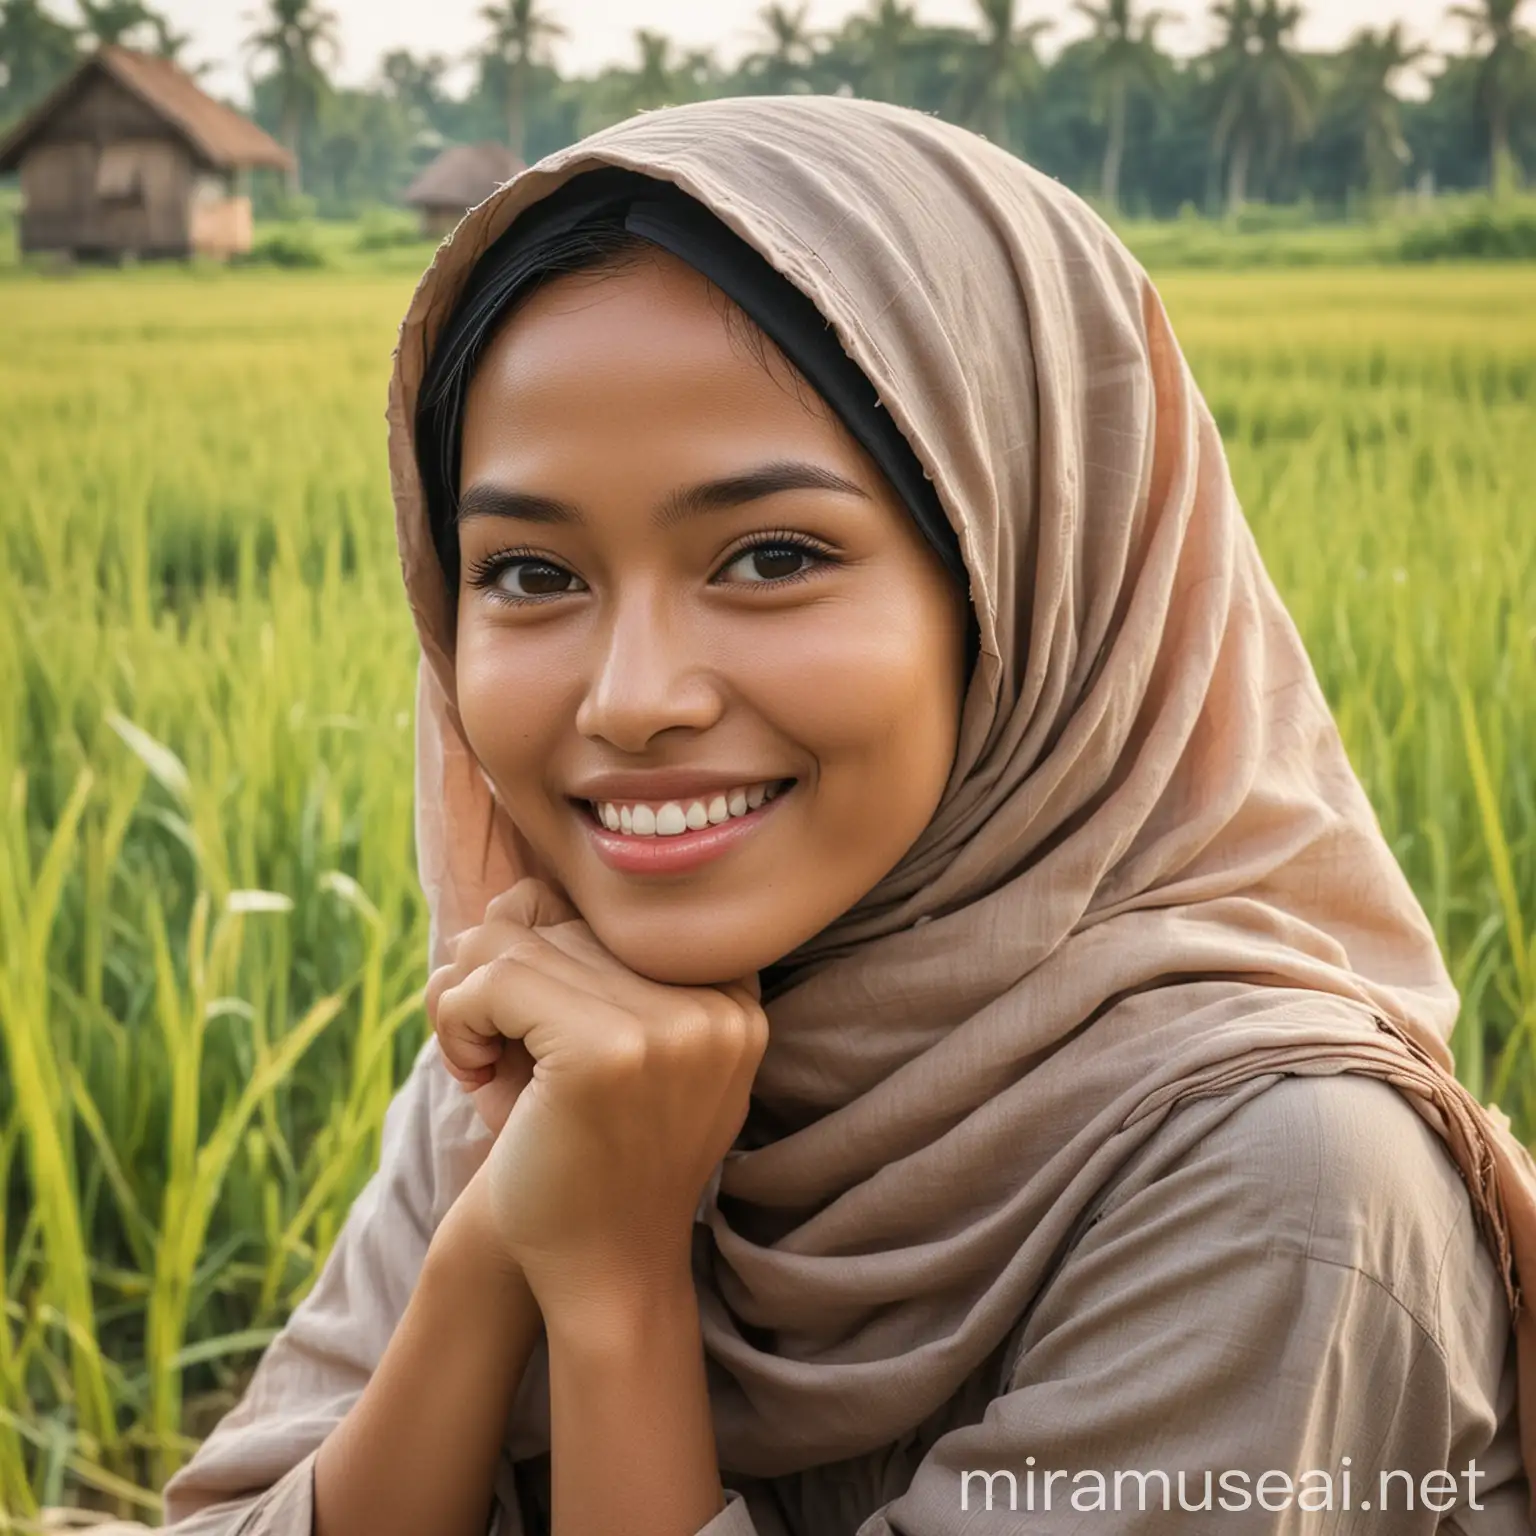 seorang wanita indonesia cantik, tersenyum, bibir atas tipis, gigi atas sedikit, terlihat memakai busana gadis pedesaan dan hijab sedang duduk di gubuk tepi sawah berkhayal dan mimpi bertemu keluarga di kampung.